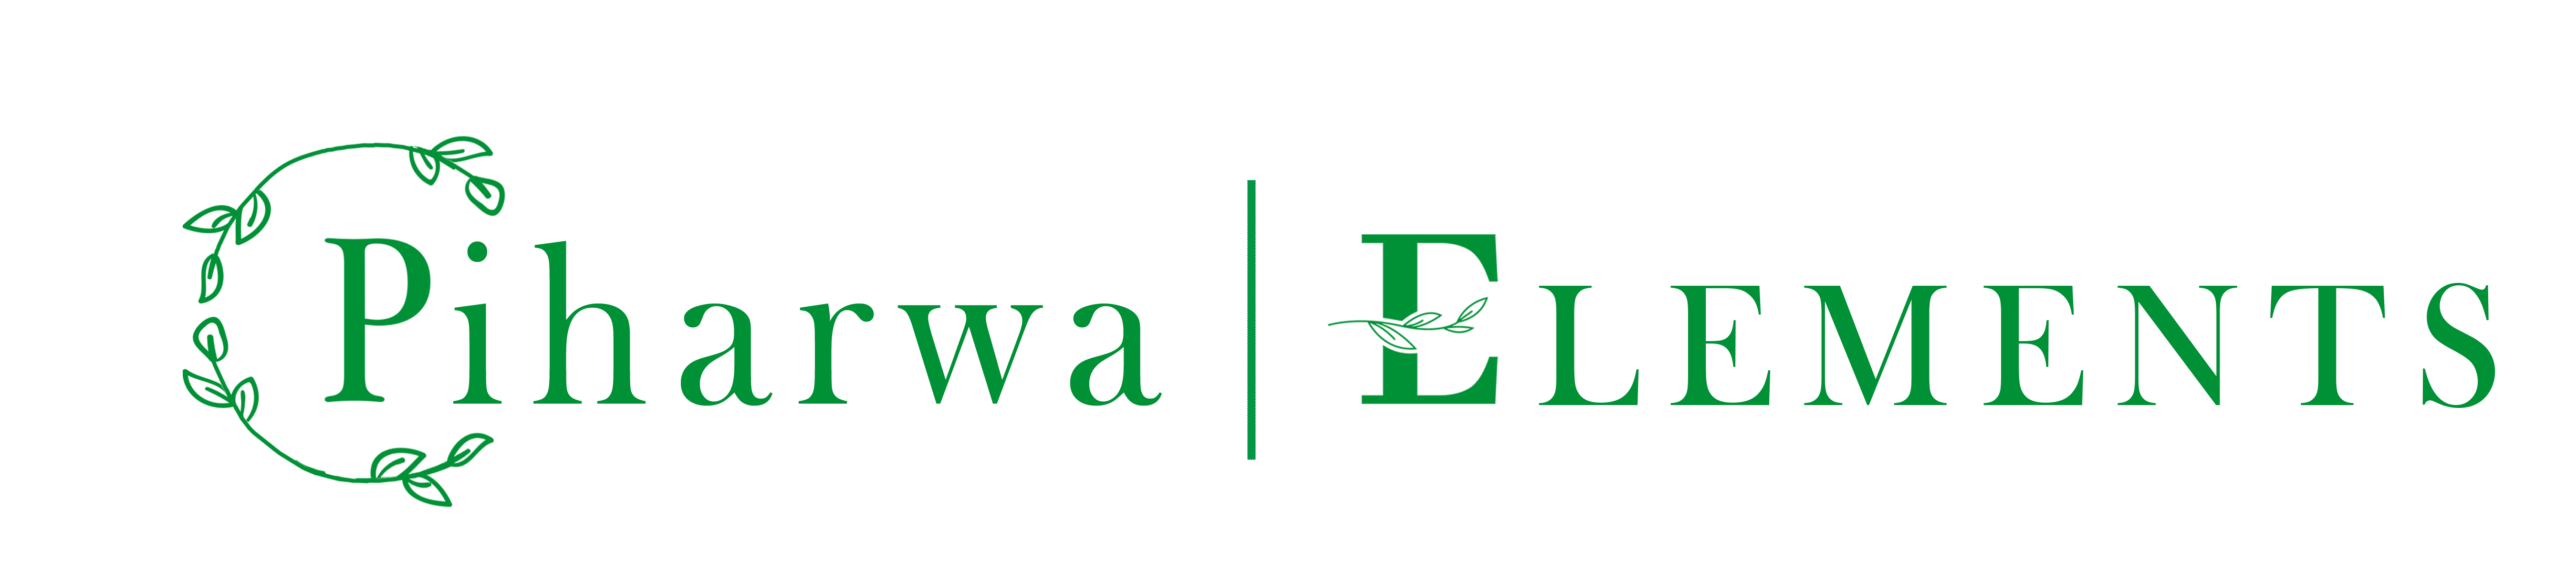 piharwa_logo